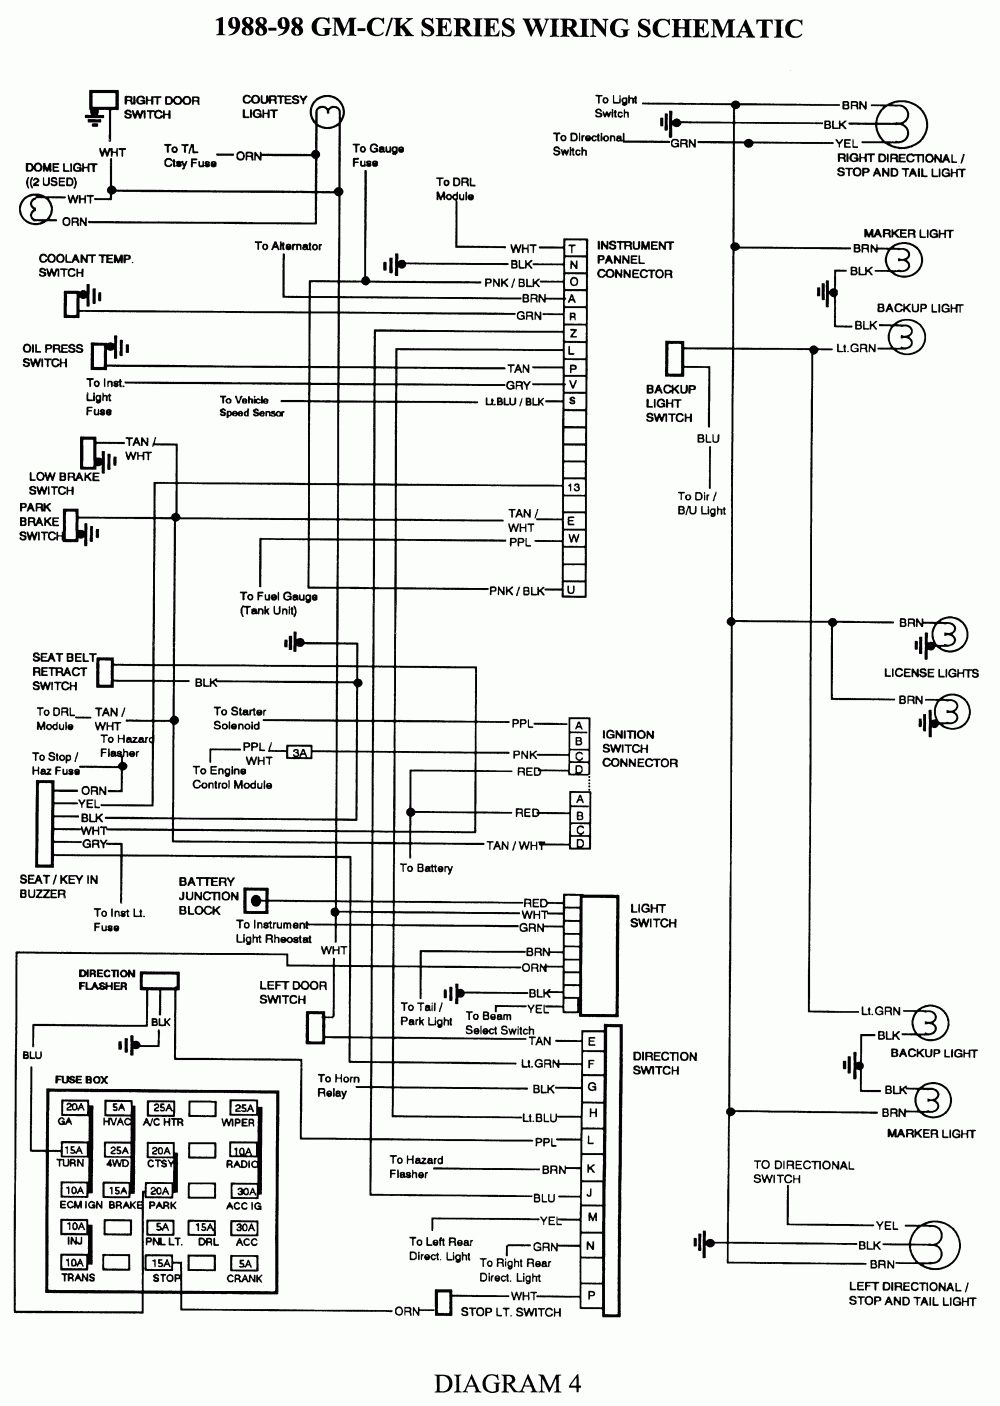 2003 Chevrolet Silverado Trailer Wiring Diagram | Wiring Diagram - 2003 Chevy Silverado Trailer Wiring Diagram